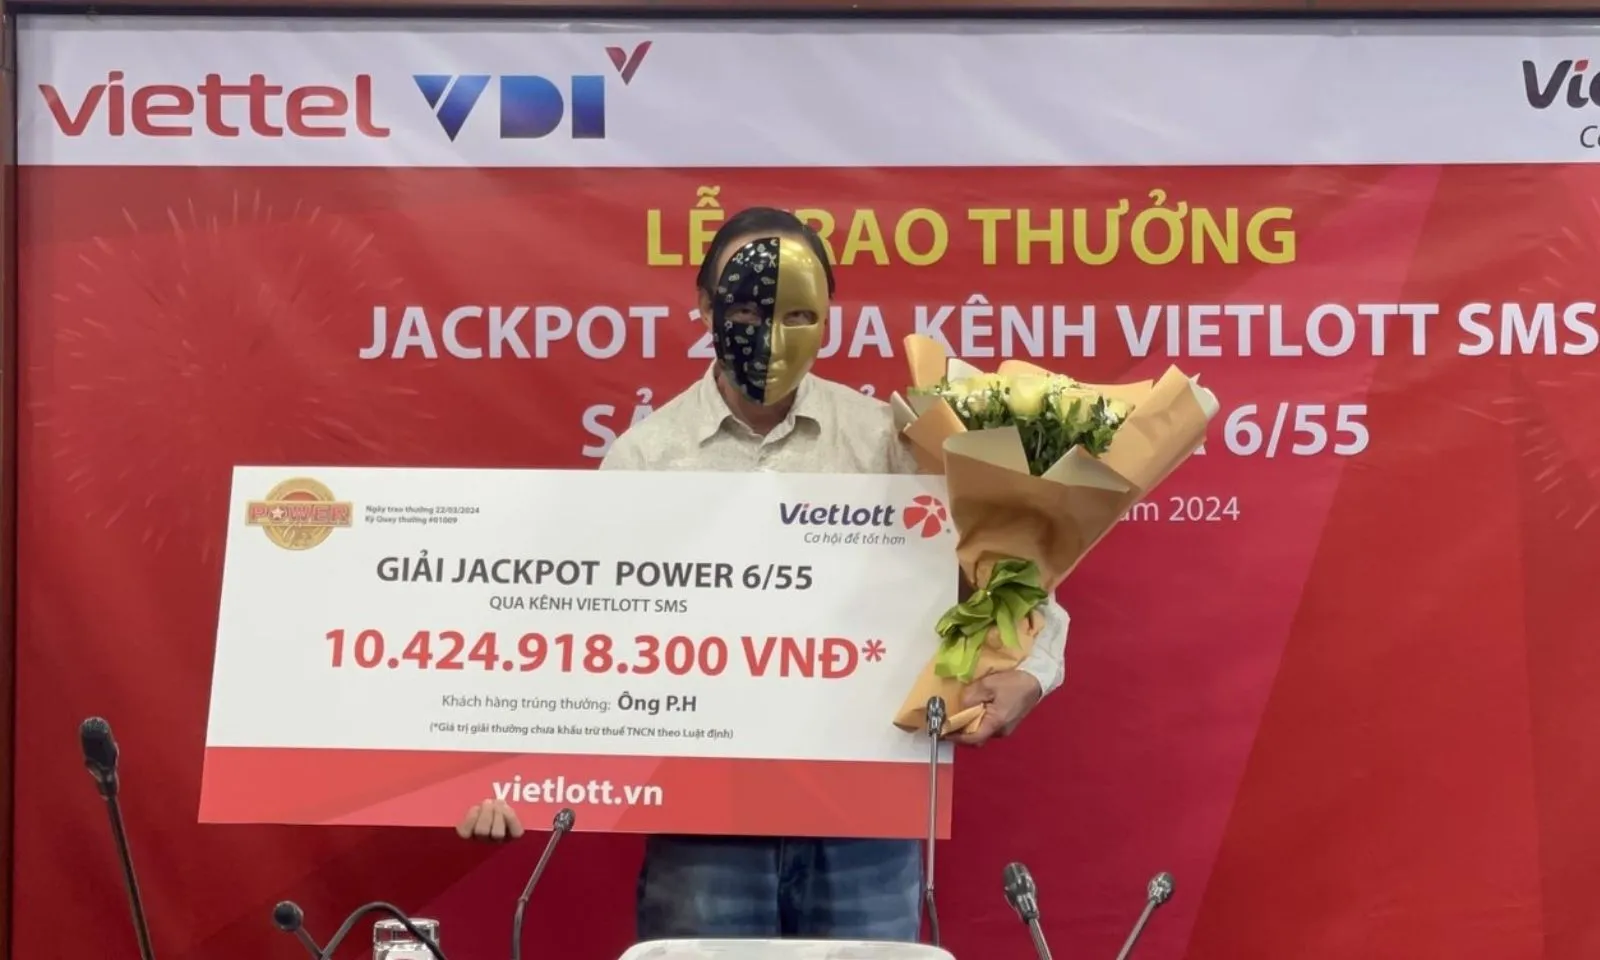 超过100亿越南盾的Vietlott奖金拥有者透露如何选择幸运号码